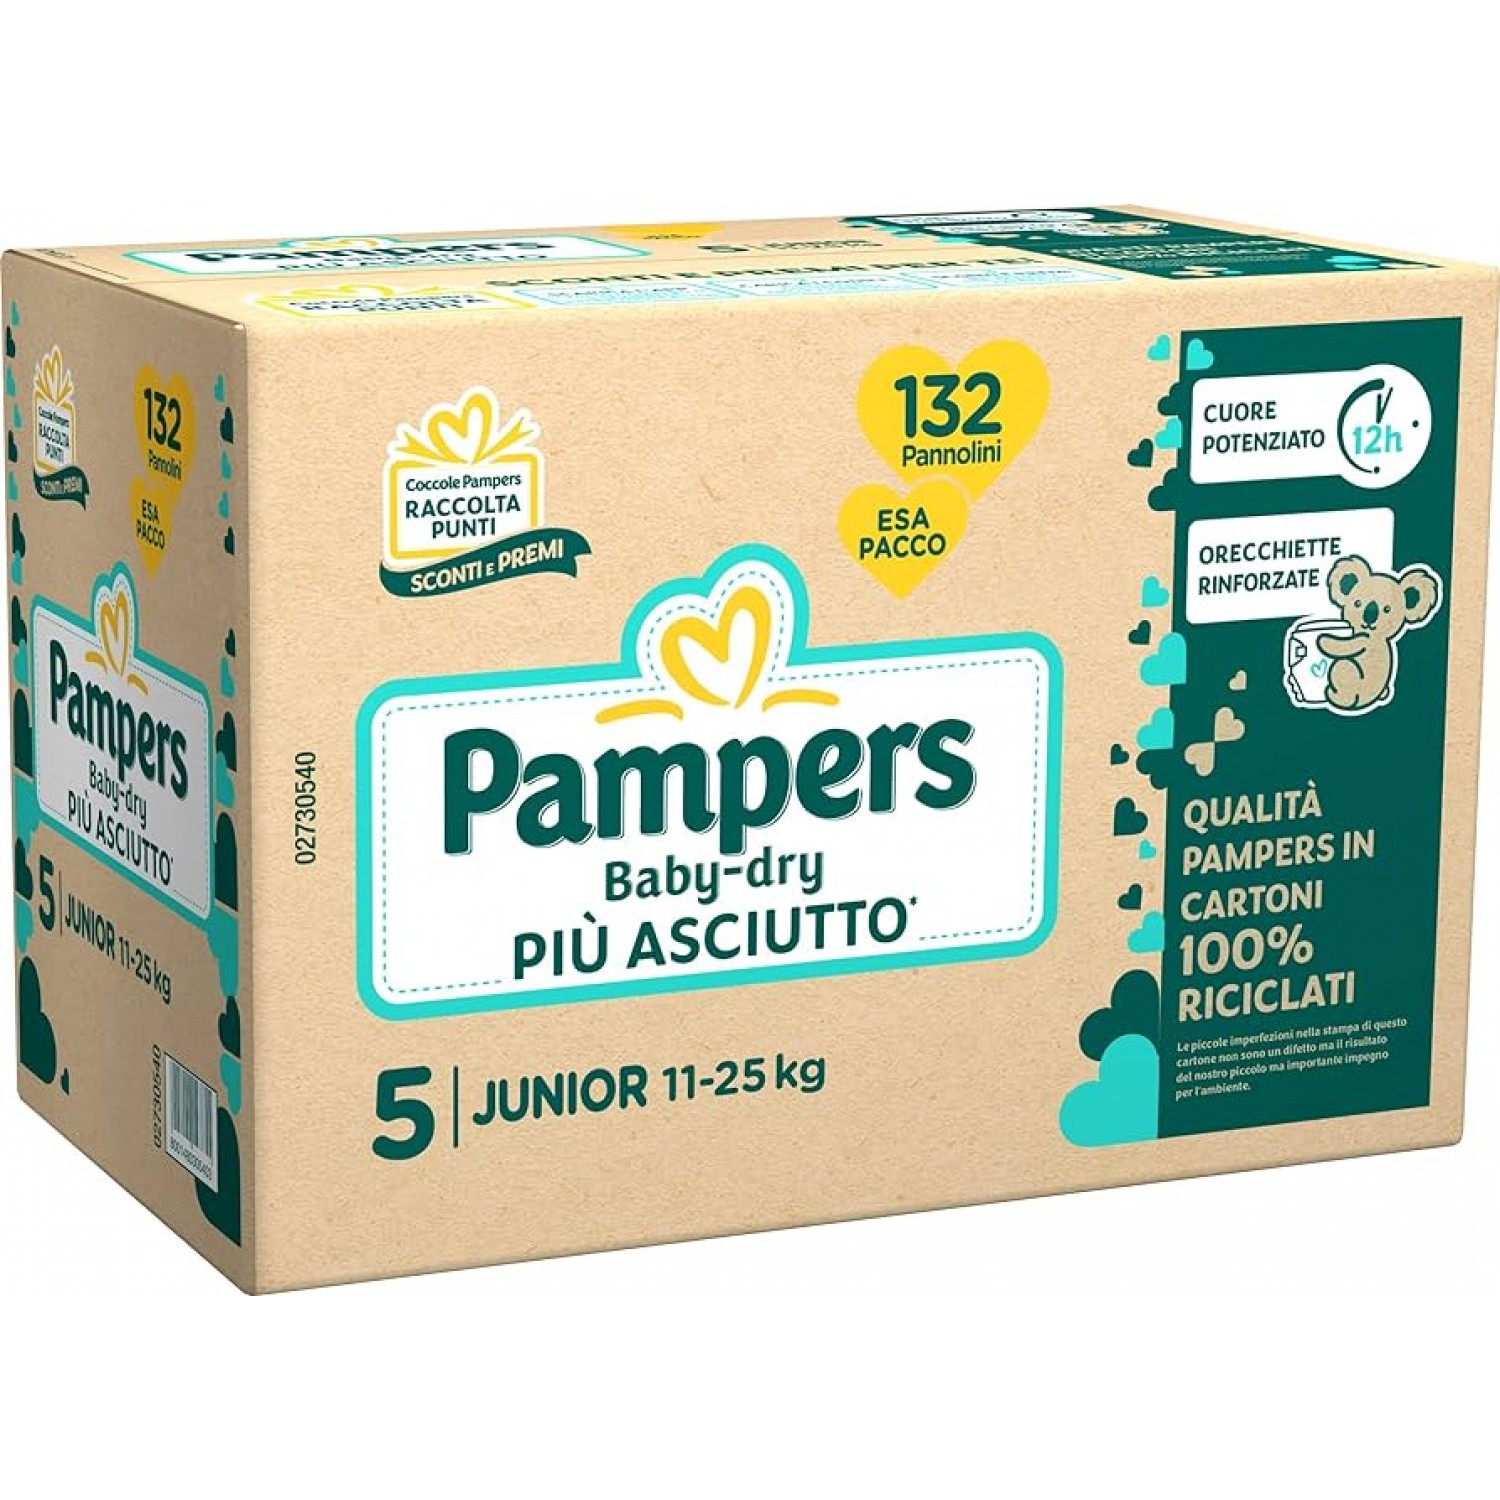 Pannolini Pampers Baby Dry Junior 11-25 Kg Misura 5 (132pz) von Pampers